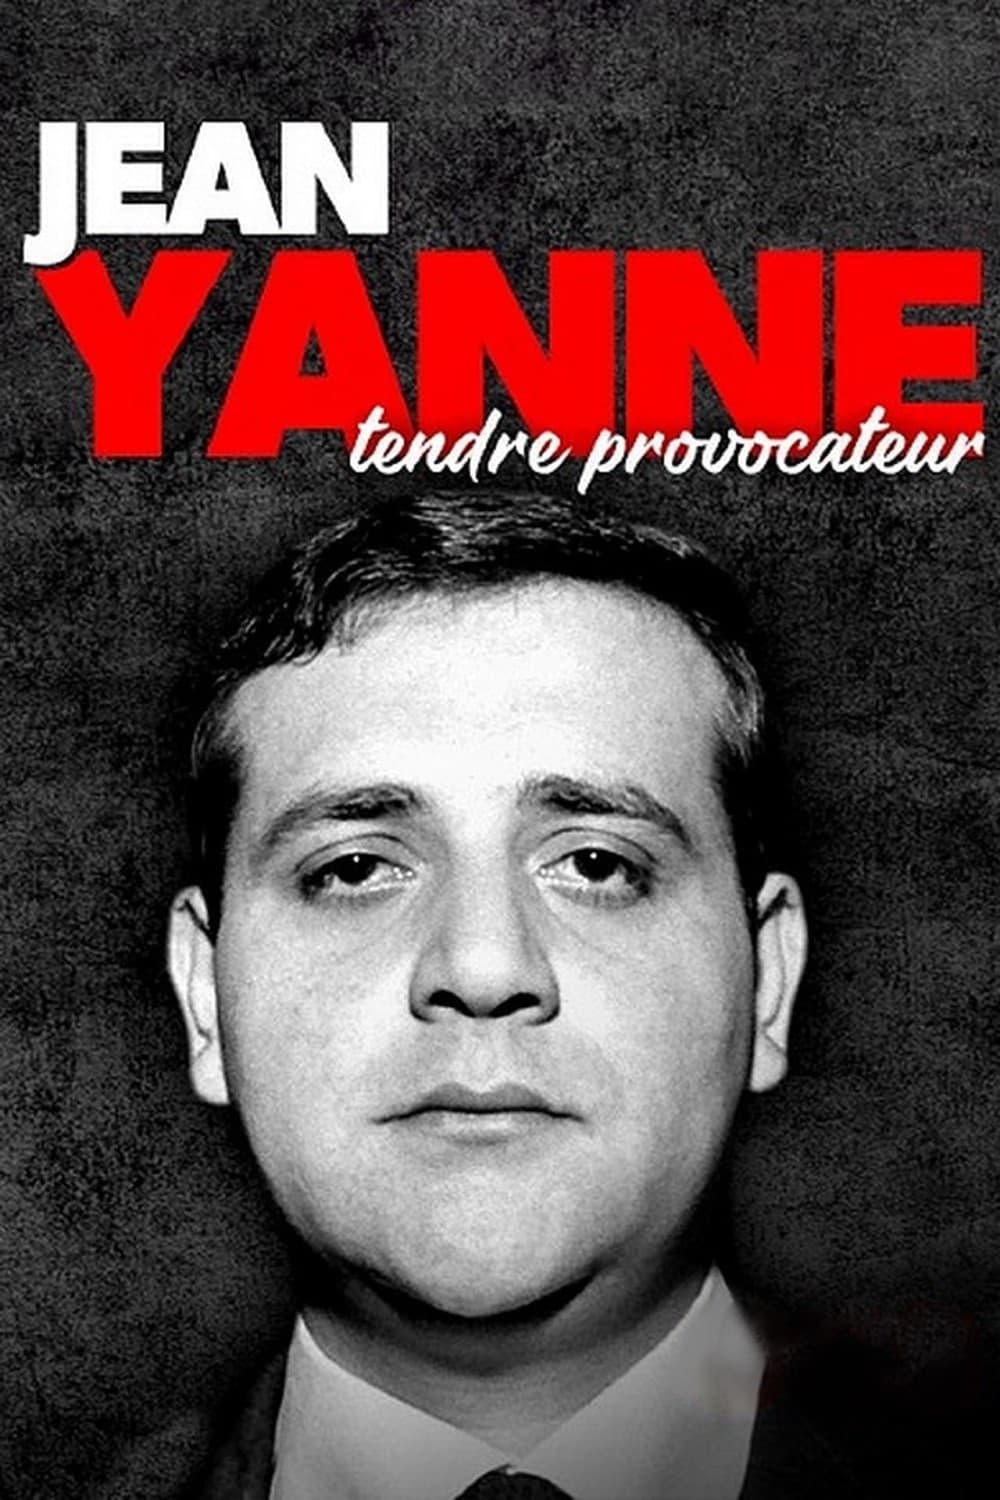 Jean Yanne, tendre provocateur